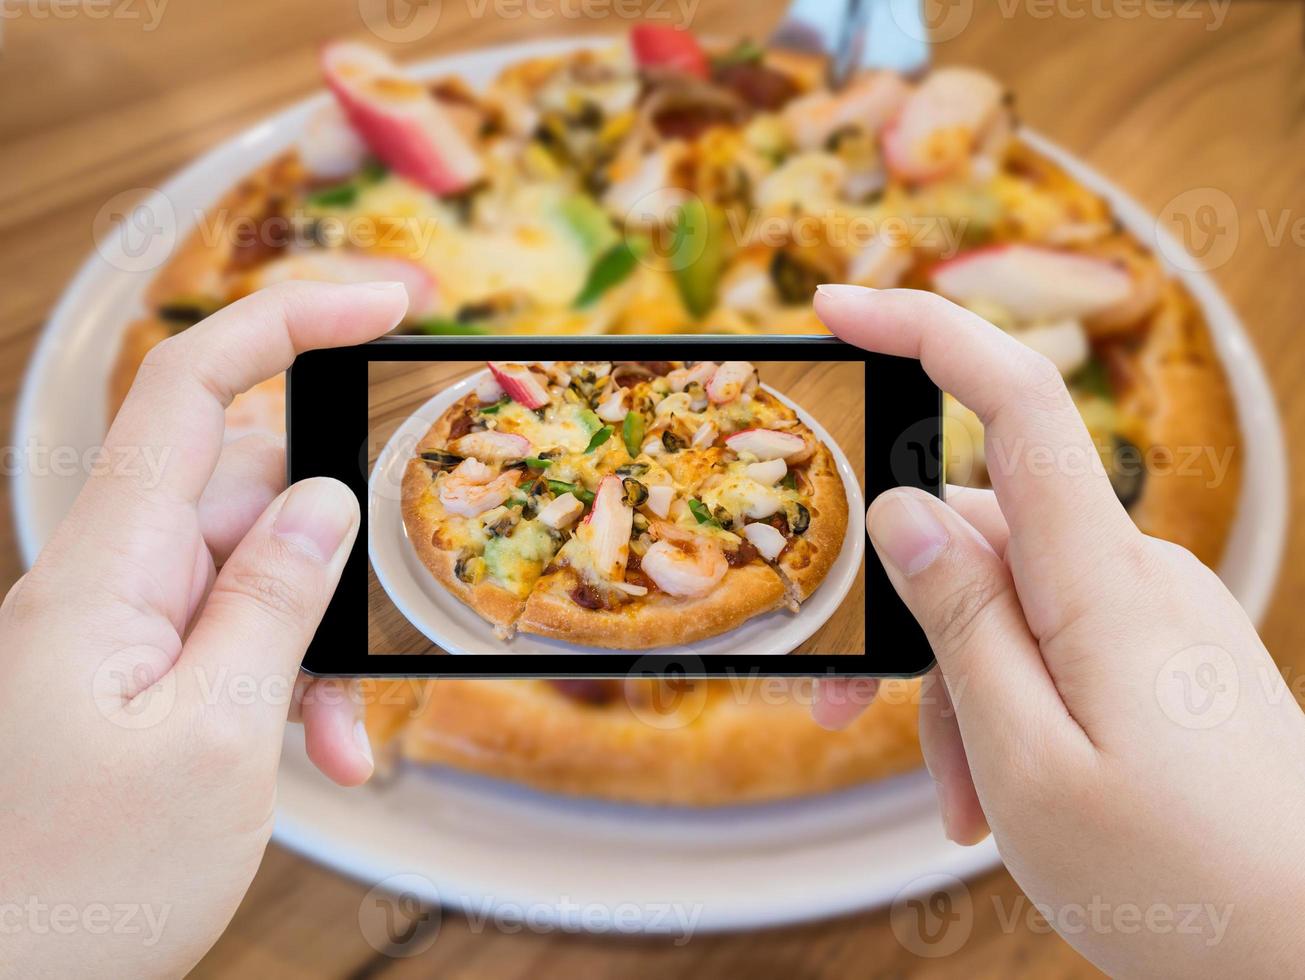 femme prenant une photo de pizza avec un smartphone mobile